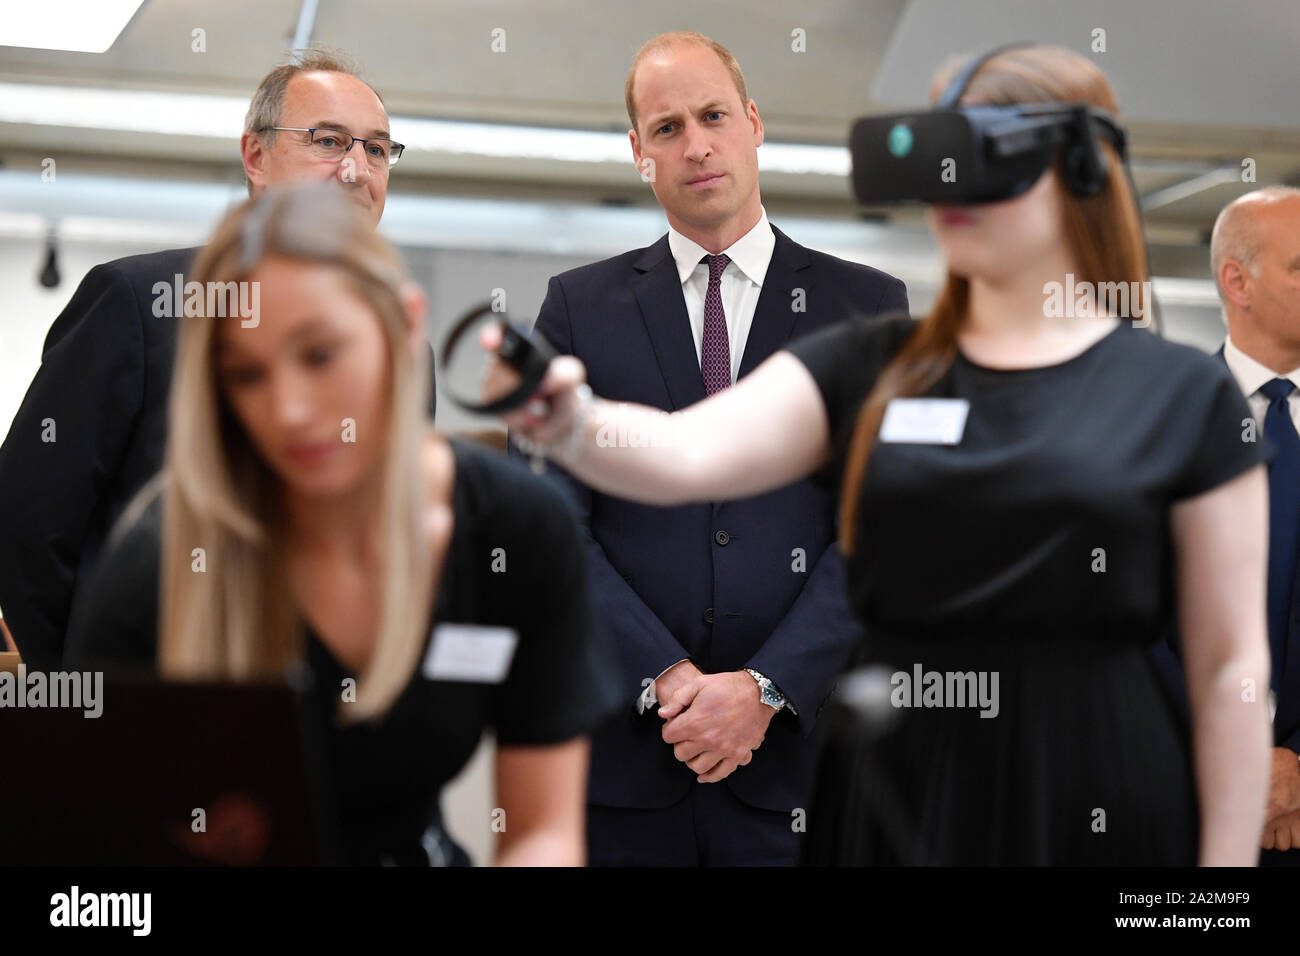 Der Herzog von Cambridge Uhren eine virtuelle Realität Demonstration für ein Programm für psychische Gesundheit am Oxford Wissenschaft Innovation Inkubation Raum während der offiziellen Eröffnung des neuen Absolvent Gebäude Keble's College in Oxford. Stockfoto